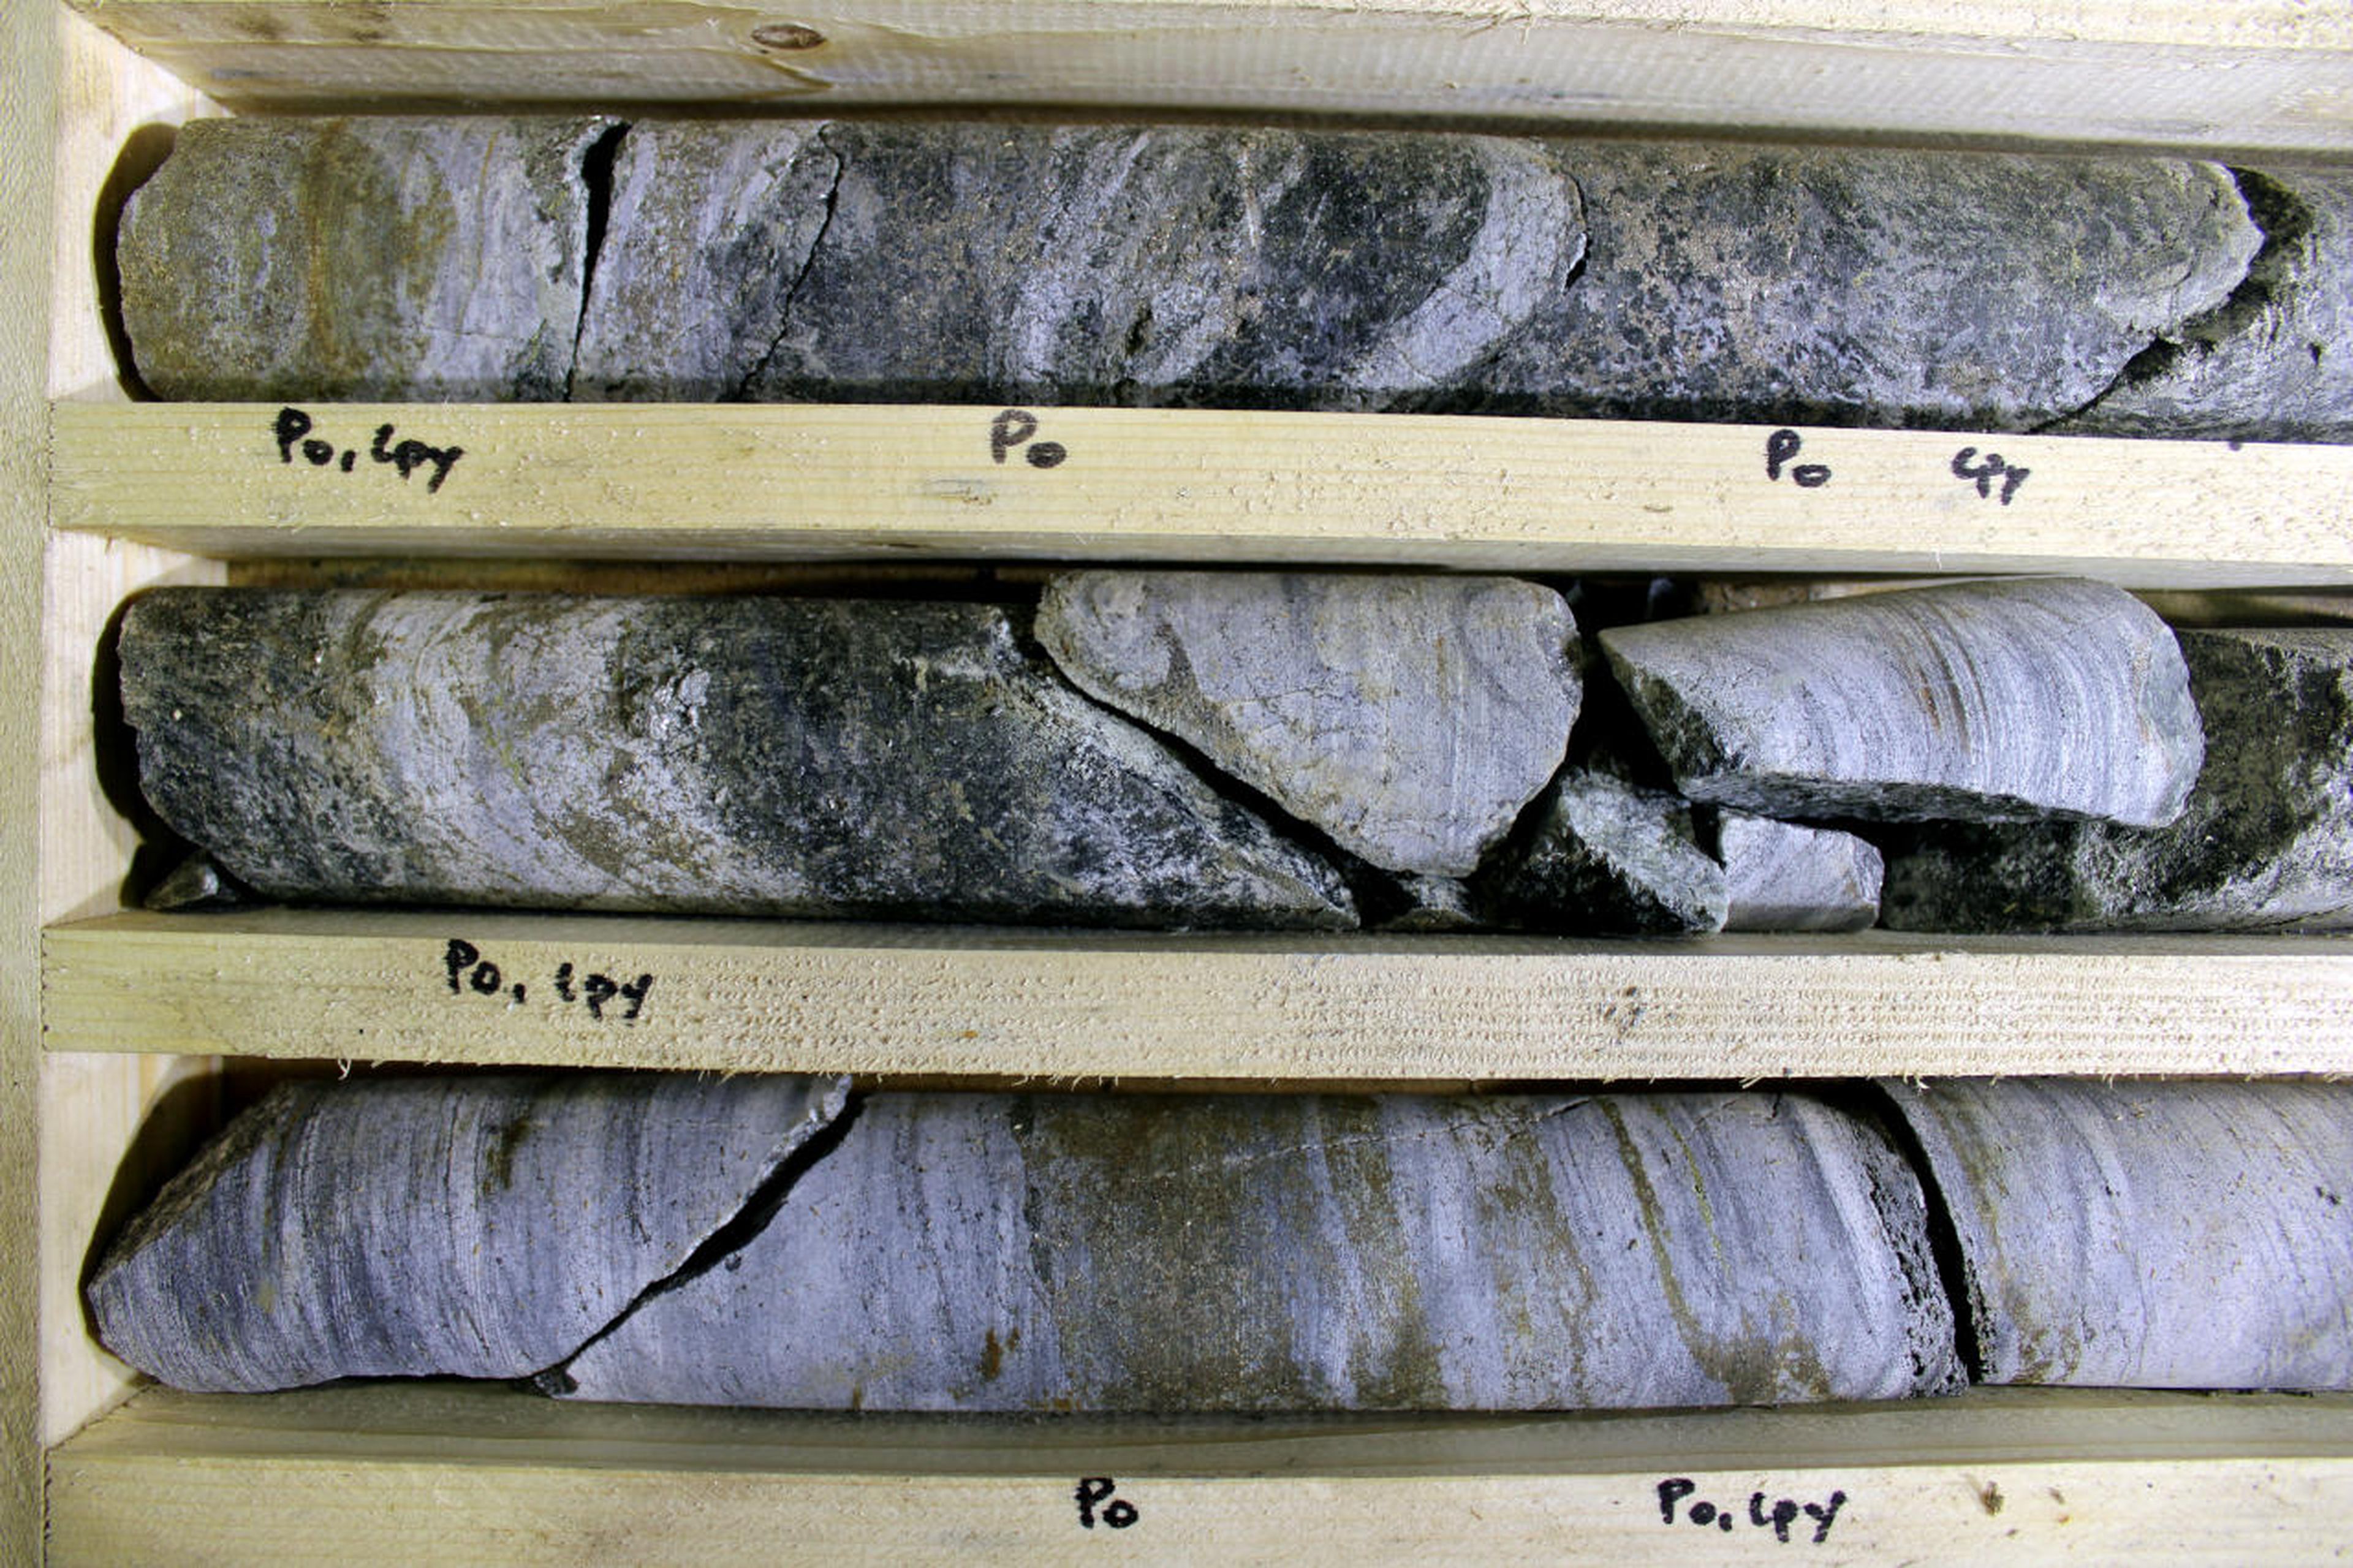 Extracto de sondeos en busca de minerales, por parte de Eurobattery Minerals